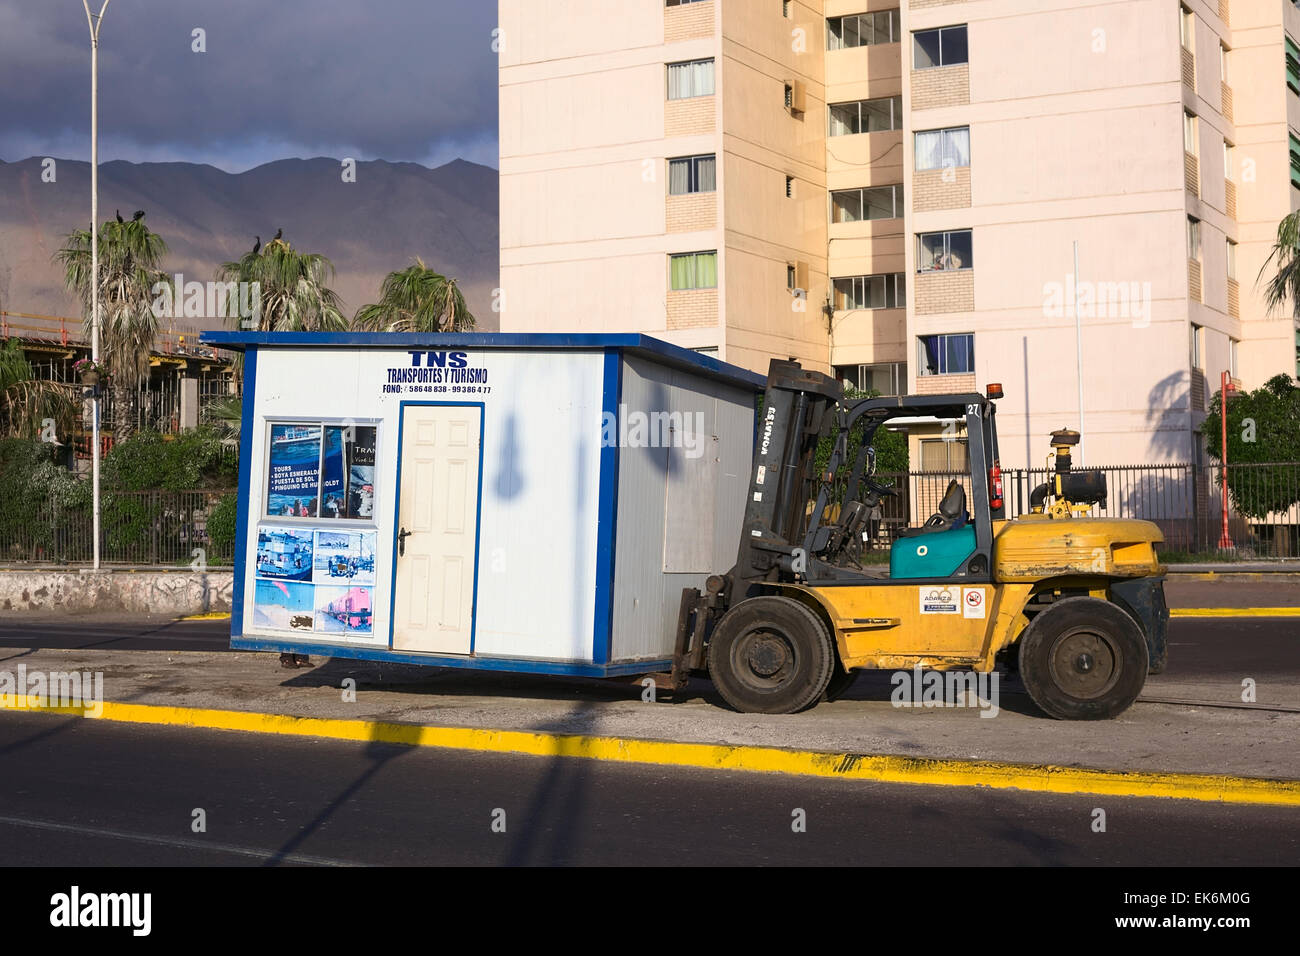 IQUIQUE, Cile - 22 gennaio 2015: piccolo stand che viene sollevato con un carrello elevatore a forche su Arturo Prat Chacon avenue Foto Stock